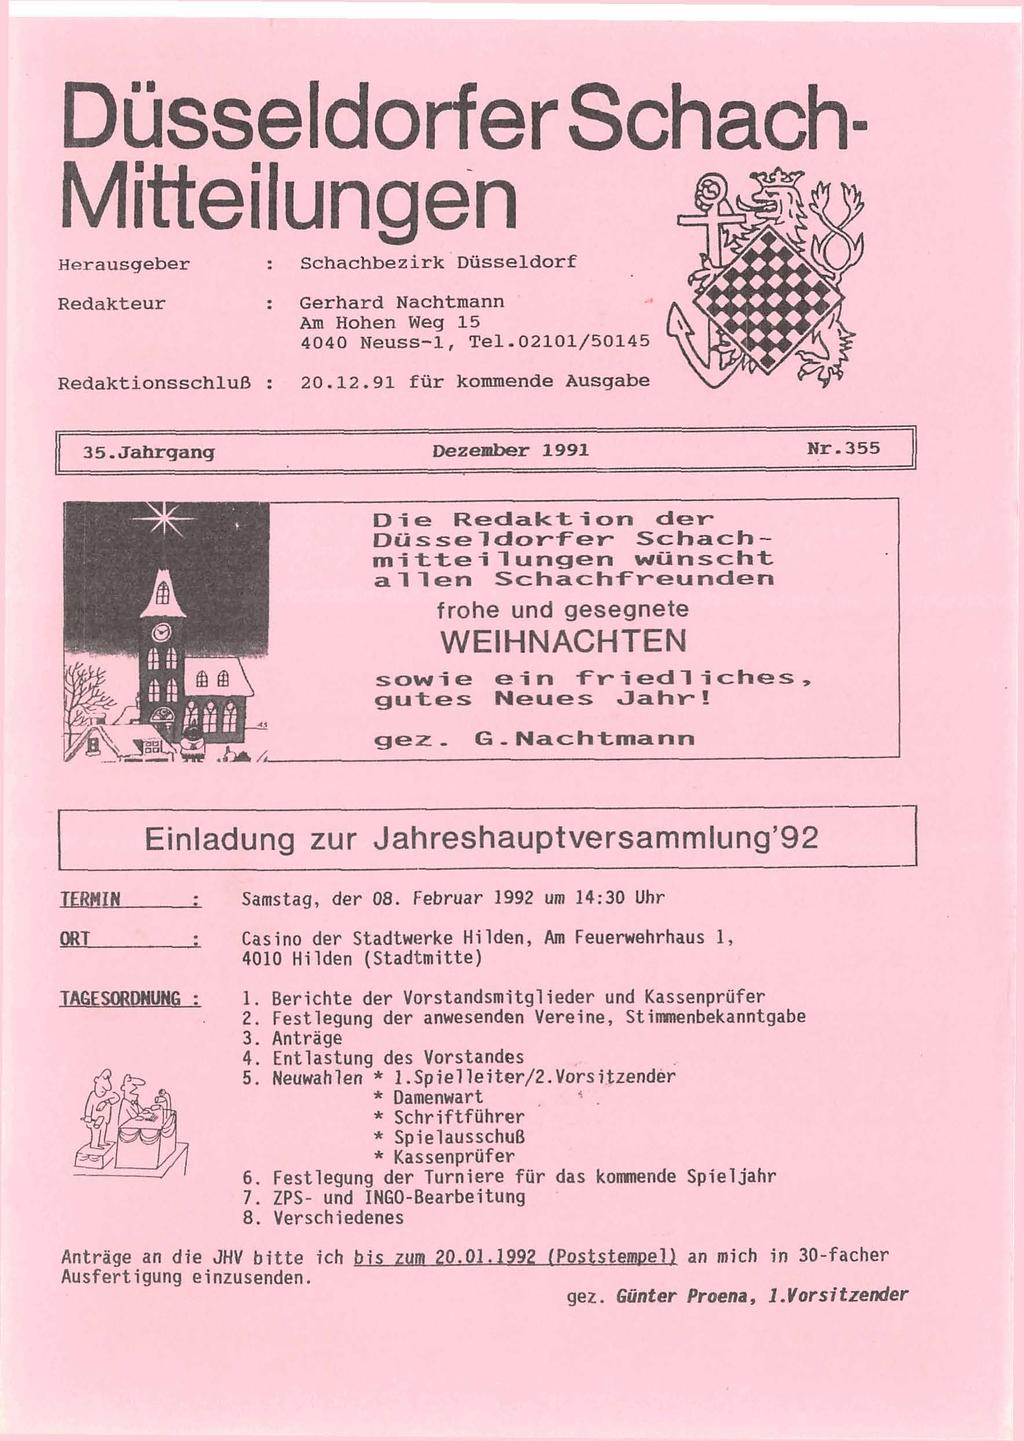 Düsseldorfer Schach- Mitteilungen Herausgeber Redakteur : Schachbezirk Diisseldorf : Gerhard Nachtmann Am Hohen Weg 15 4040 Neuss-1, Te1.02101/50145 Redaktionsschluß : 20.12.